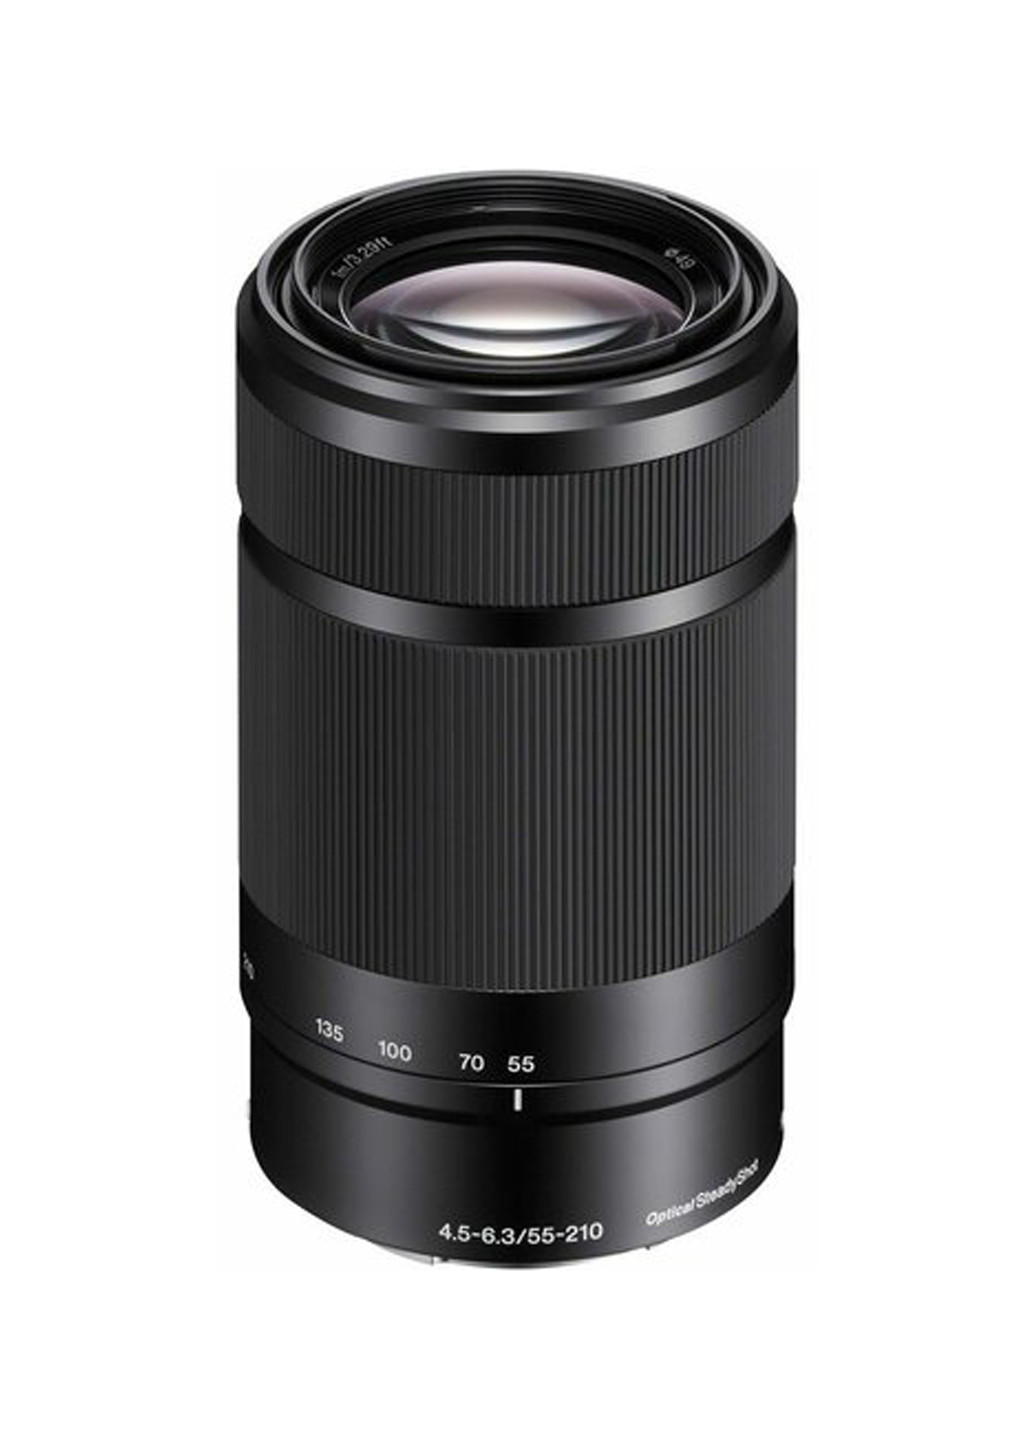 Системна фотокамера Alpha 6000 + об'єктив 16-50 + 55-210mm Kit Black Sony alpha 6000 + объектив 16-50 + 55-210mm kit black (134769271)